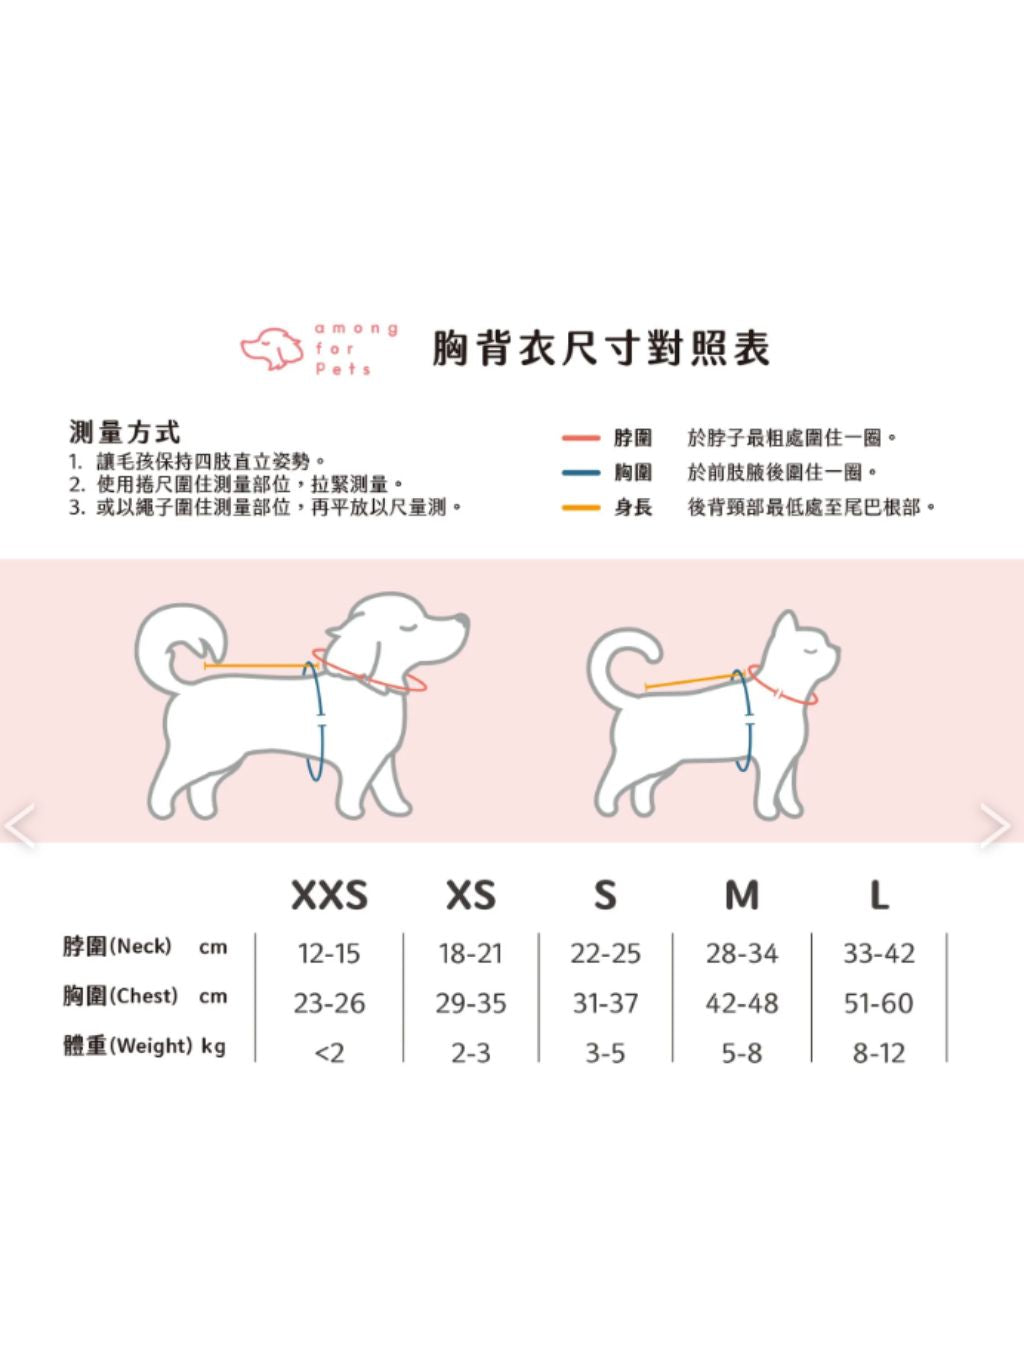 Among for pets | 洋子同學制服 U8 (預售)